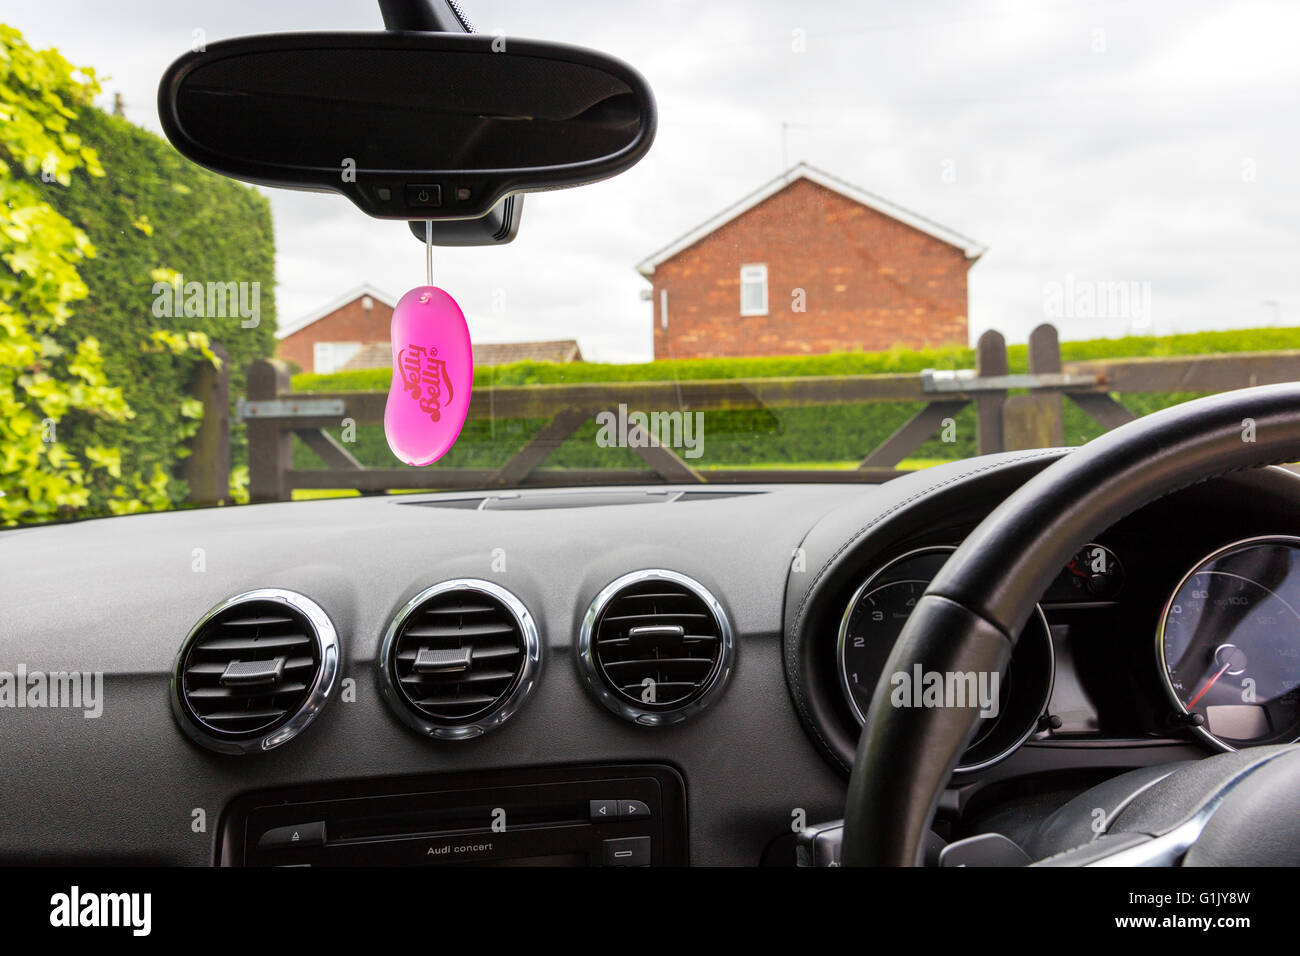 Auto Lufterfrischer hängen im Fahrzeug Fenster Duft für Fahrzeuginnenraum  Jelly Belly machen Marke UK England Lufterfrischer Stockfotografie - Alamy